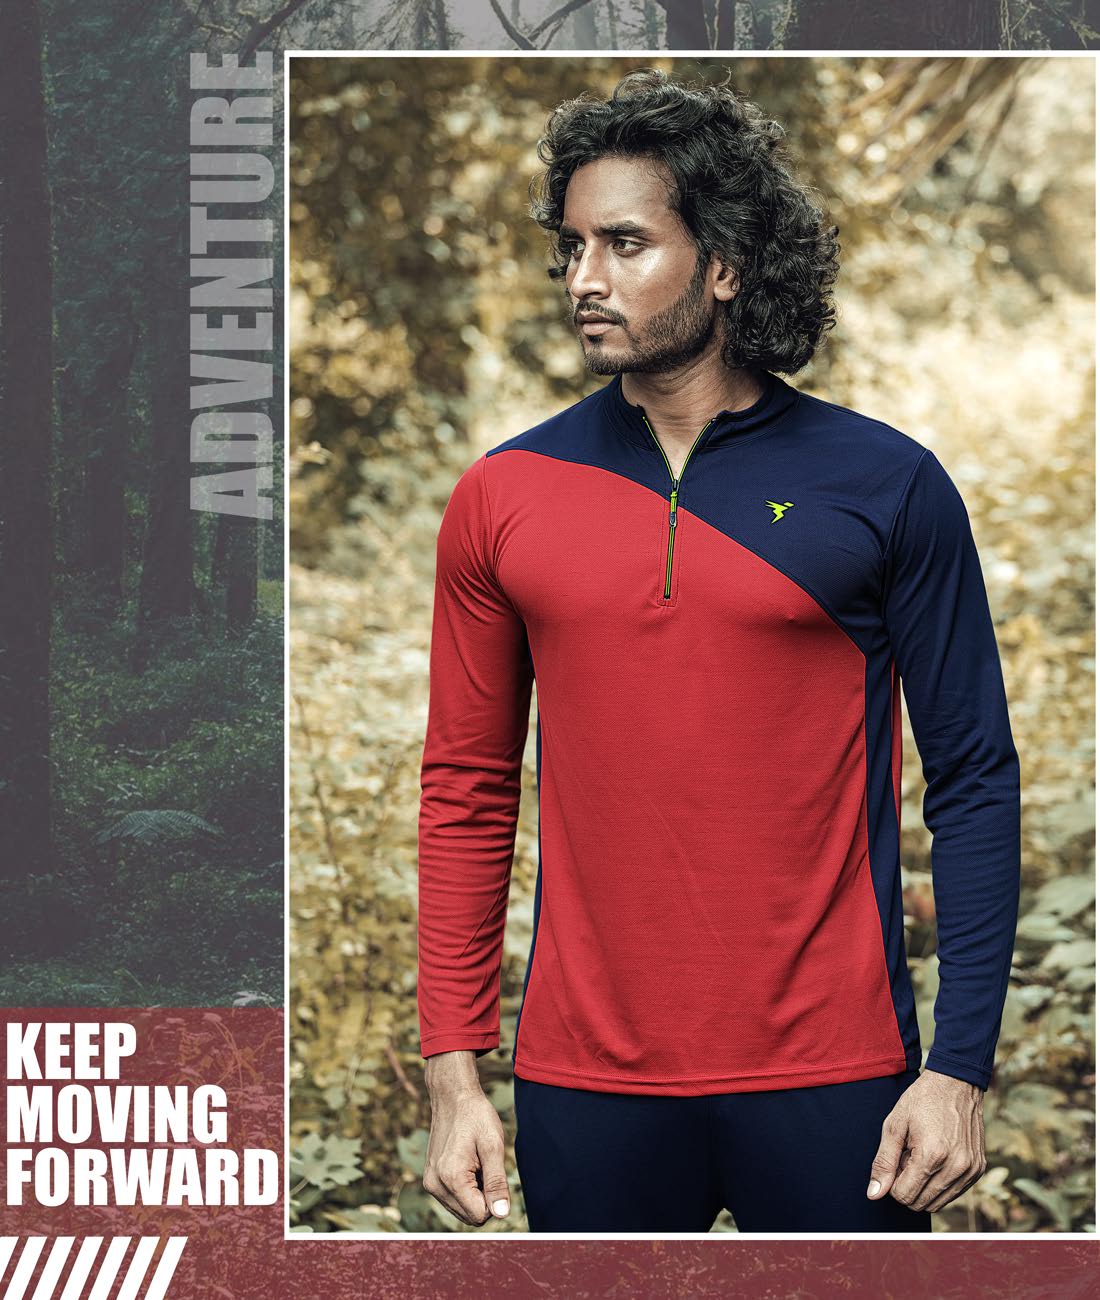 TechnoSport T-Neck Full Sleeve Half Zip Dry Fit T-Shirt for Men P-486 (Red/Navy Blue)